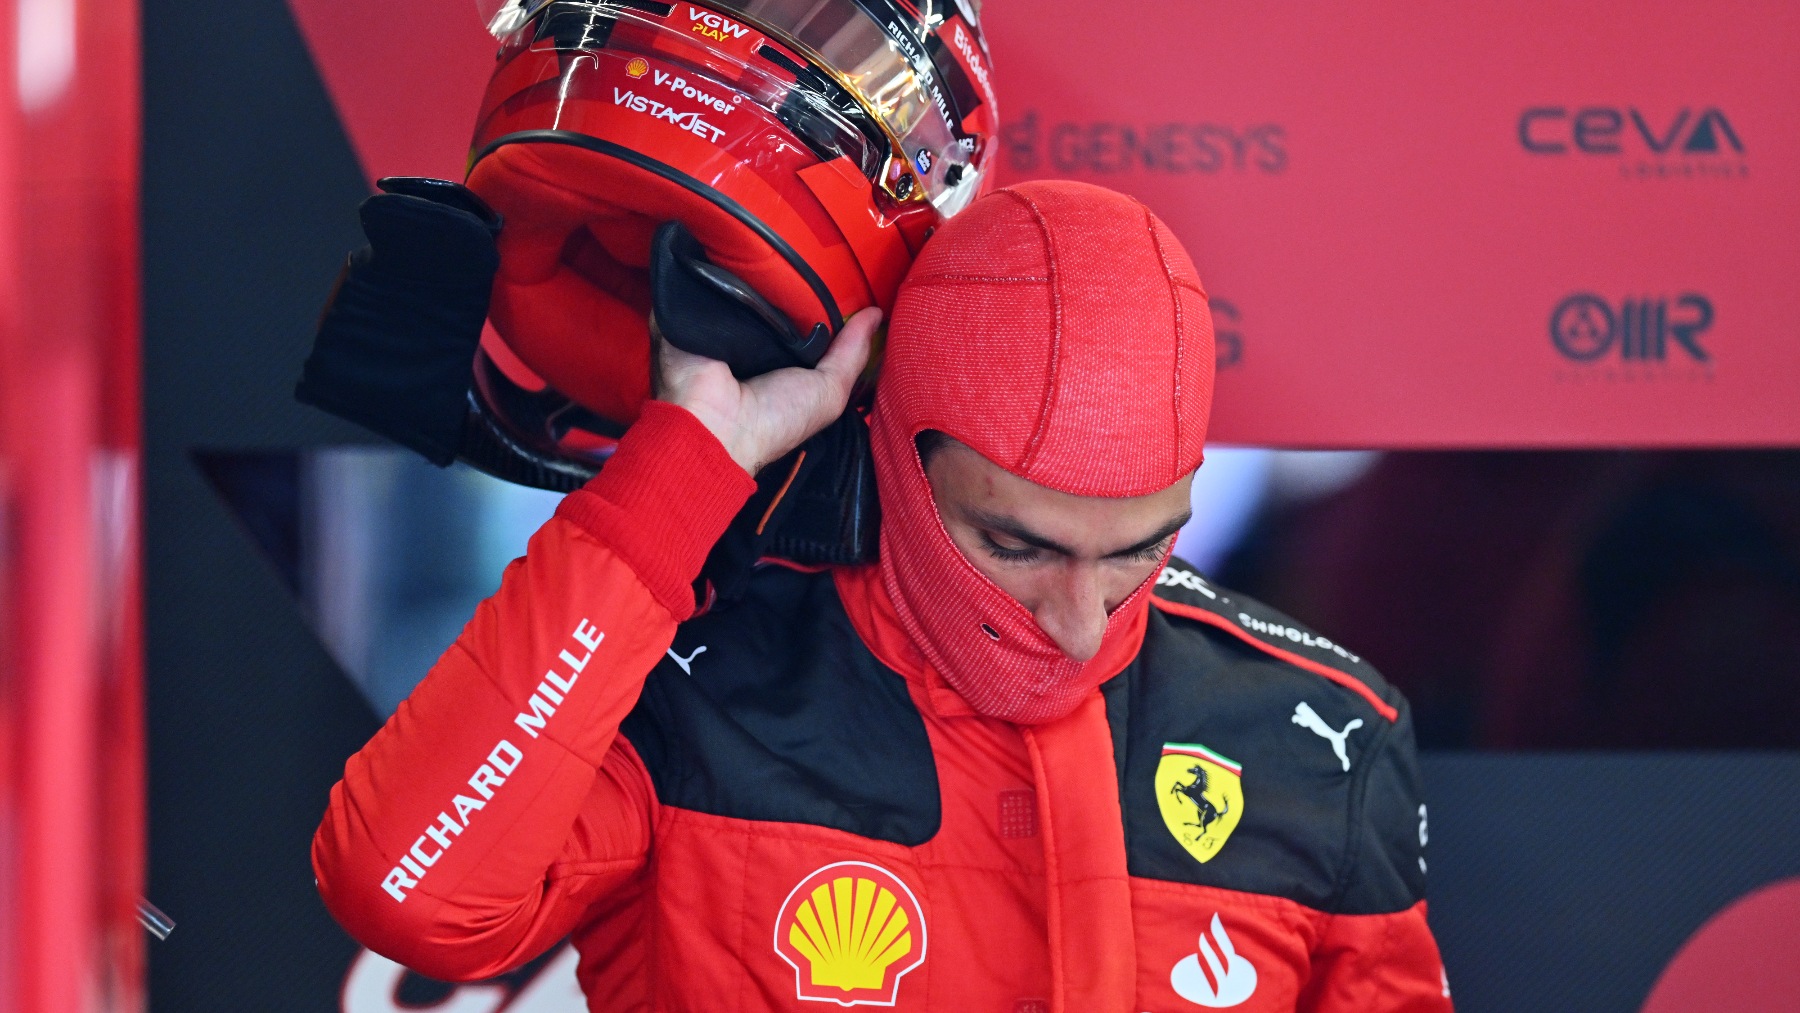 Carlos Sainz en el garaje de Ferrari. (Getty)